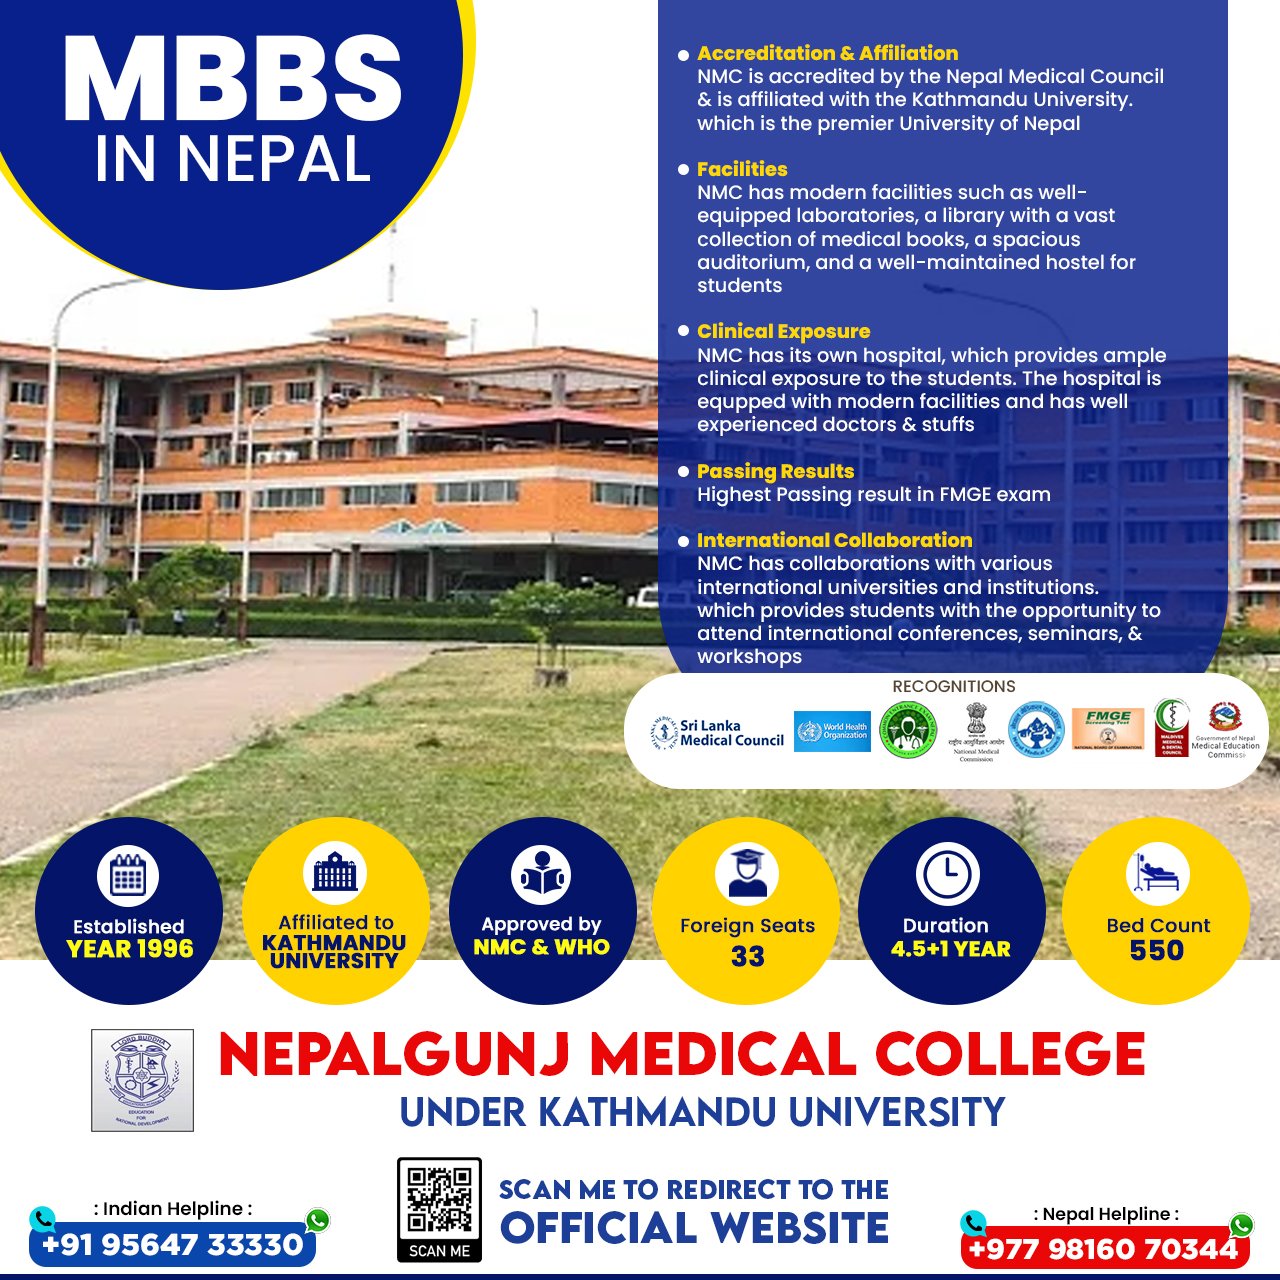 mbbs-in-nepal-at-nepalgunj-medical-college-under-kathmandu-university